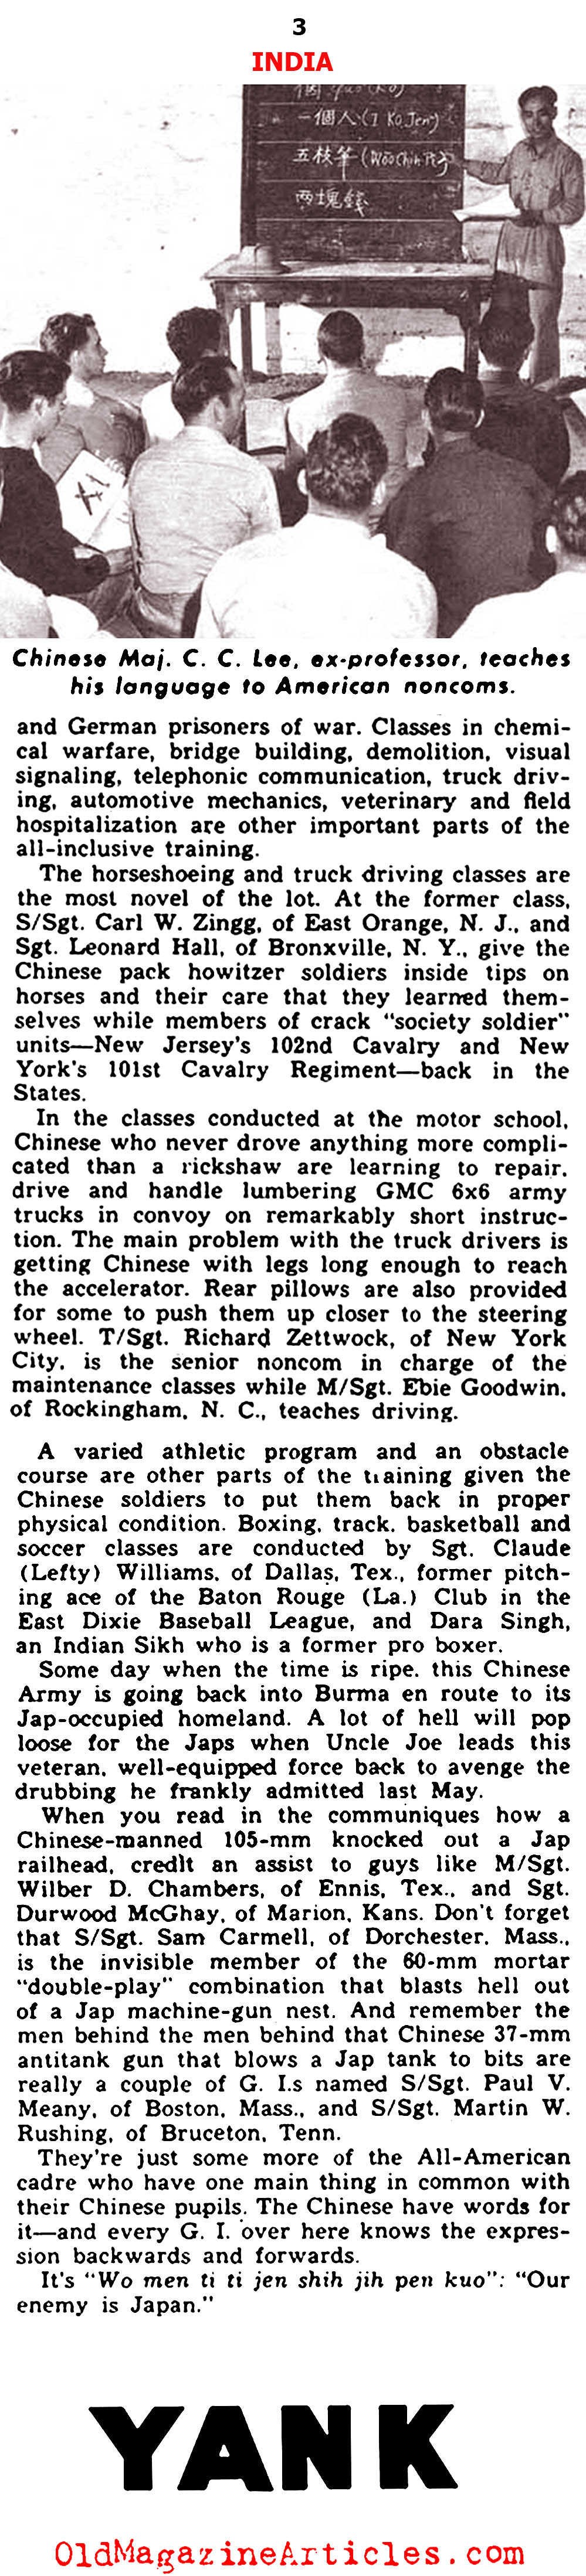  Nationalist Chinese Trained by U.S. Army (Yank Magazine, 1943)